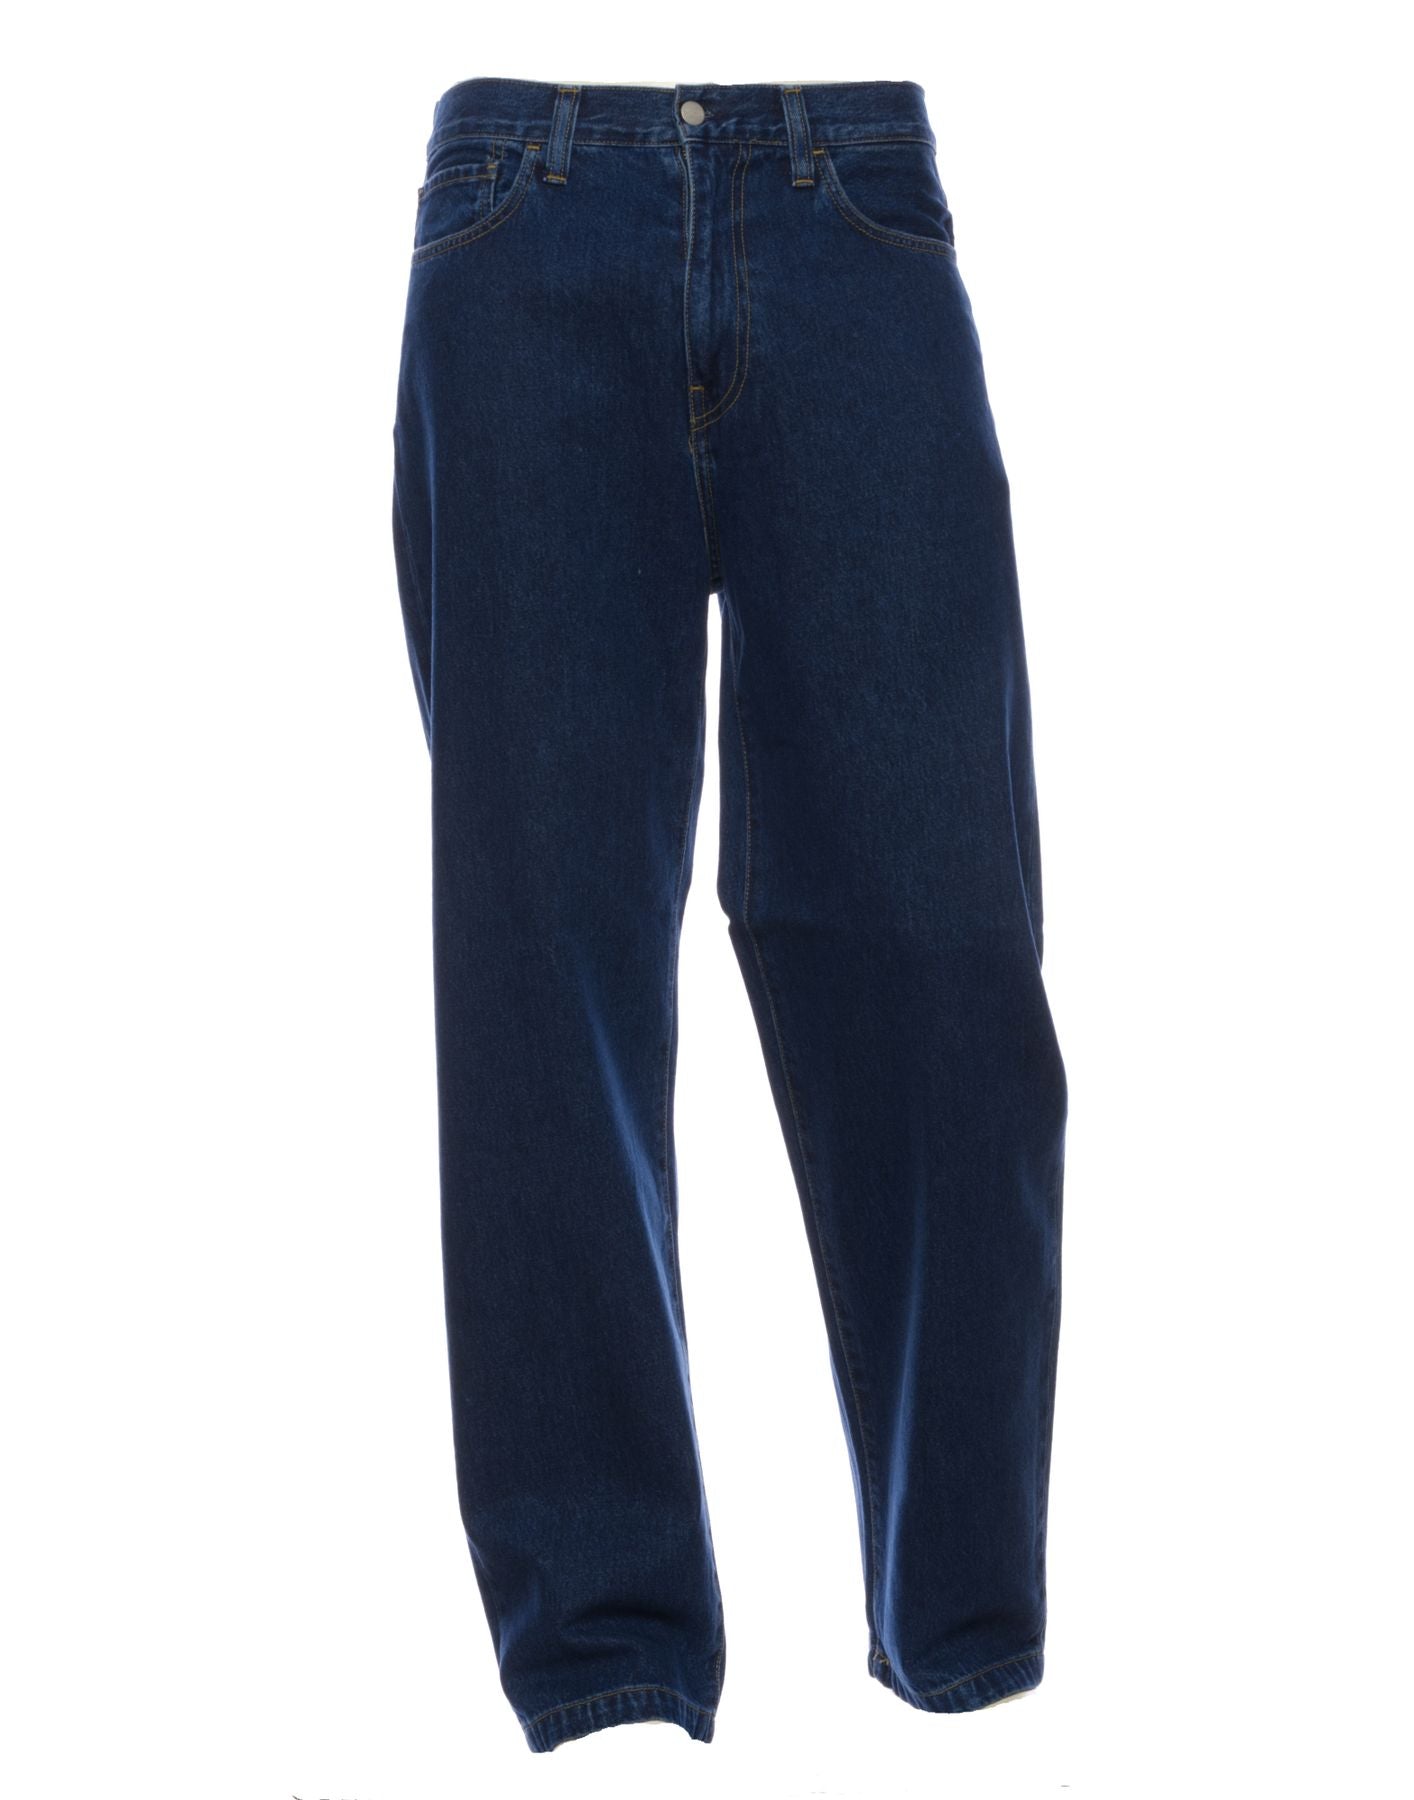 Jeans für Mann I030468 Blauer Stein gewaschen CARHARTT WIP